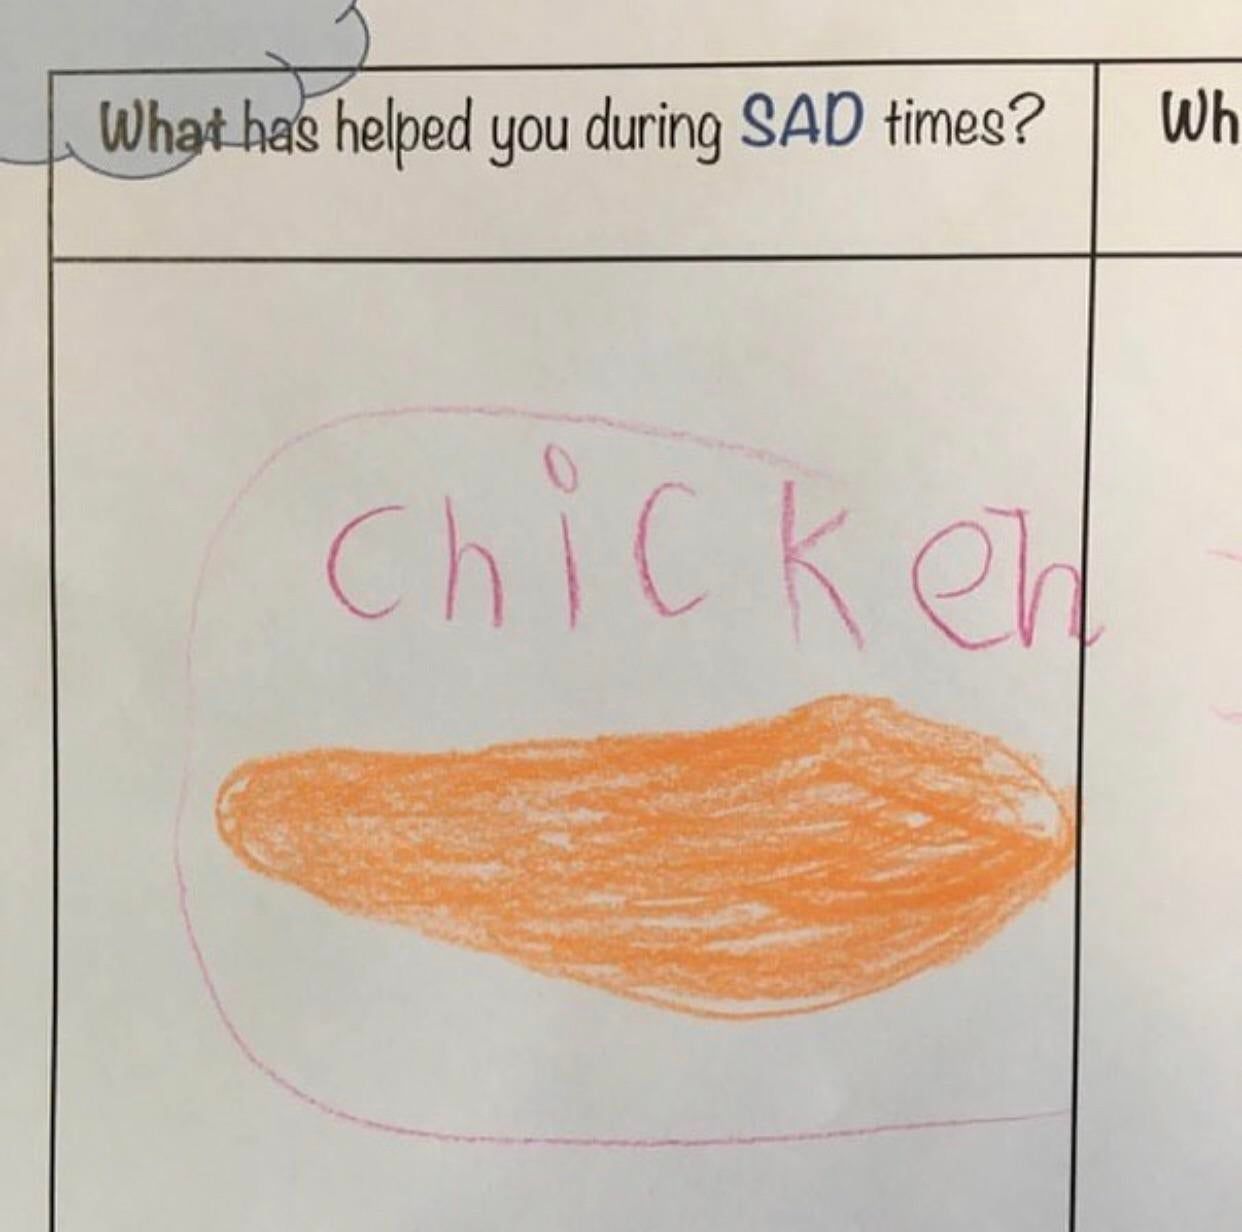 Thanks chicken